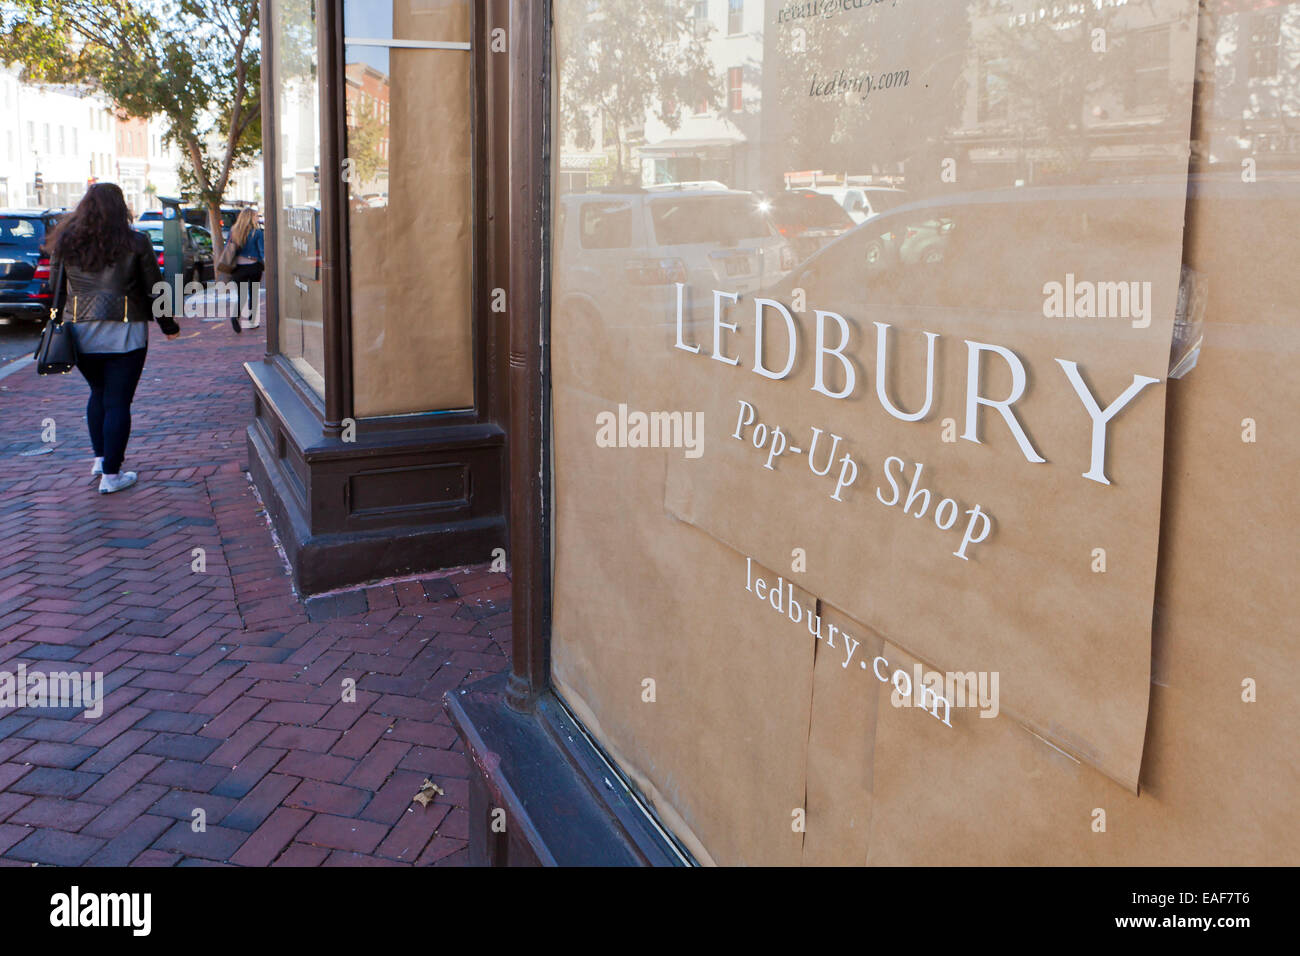 Ledbury pop-up shop sign - USA Stock Photo